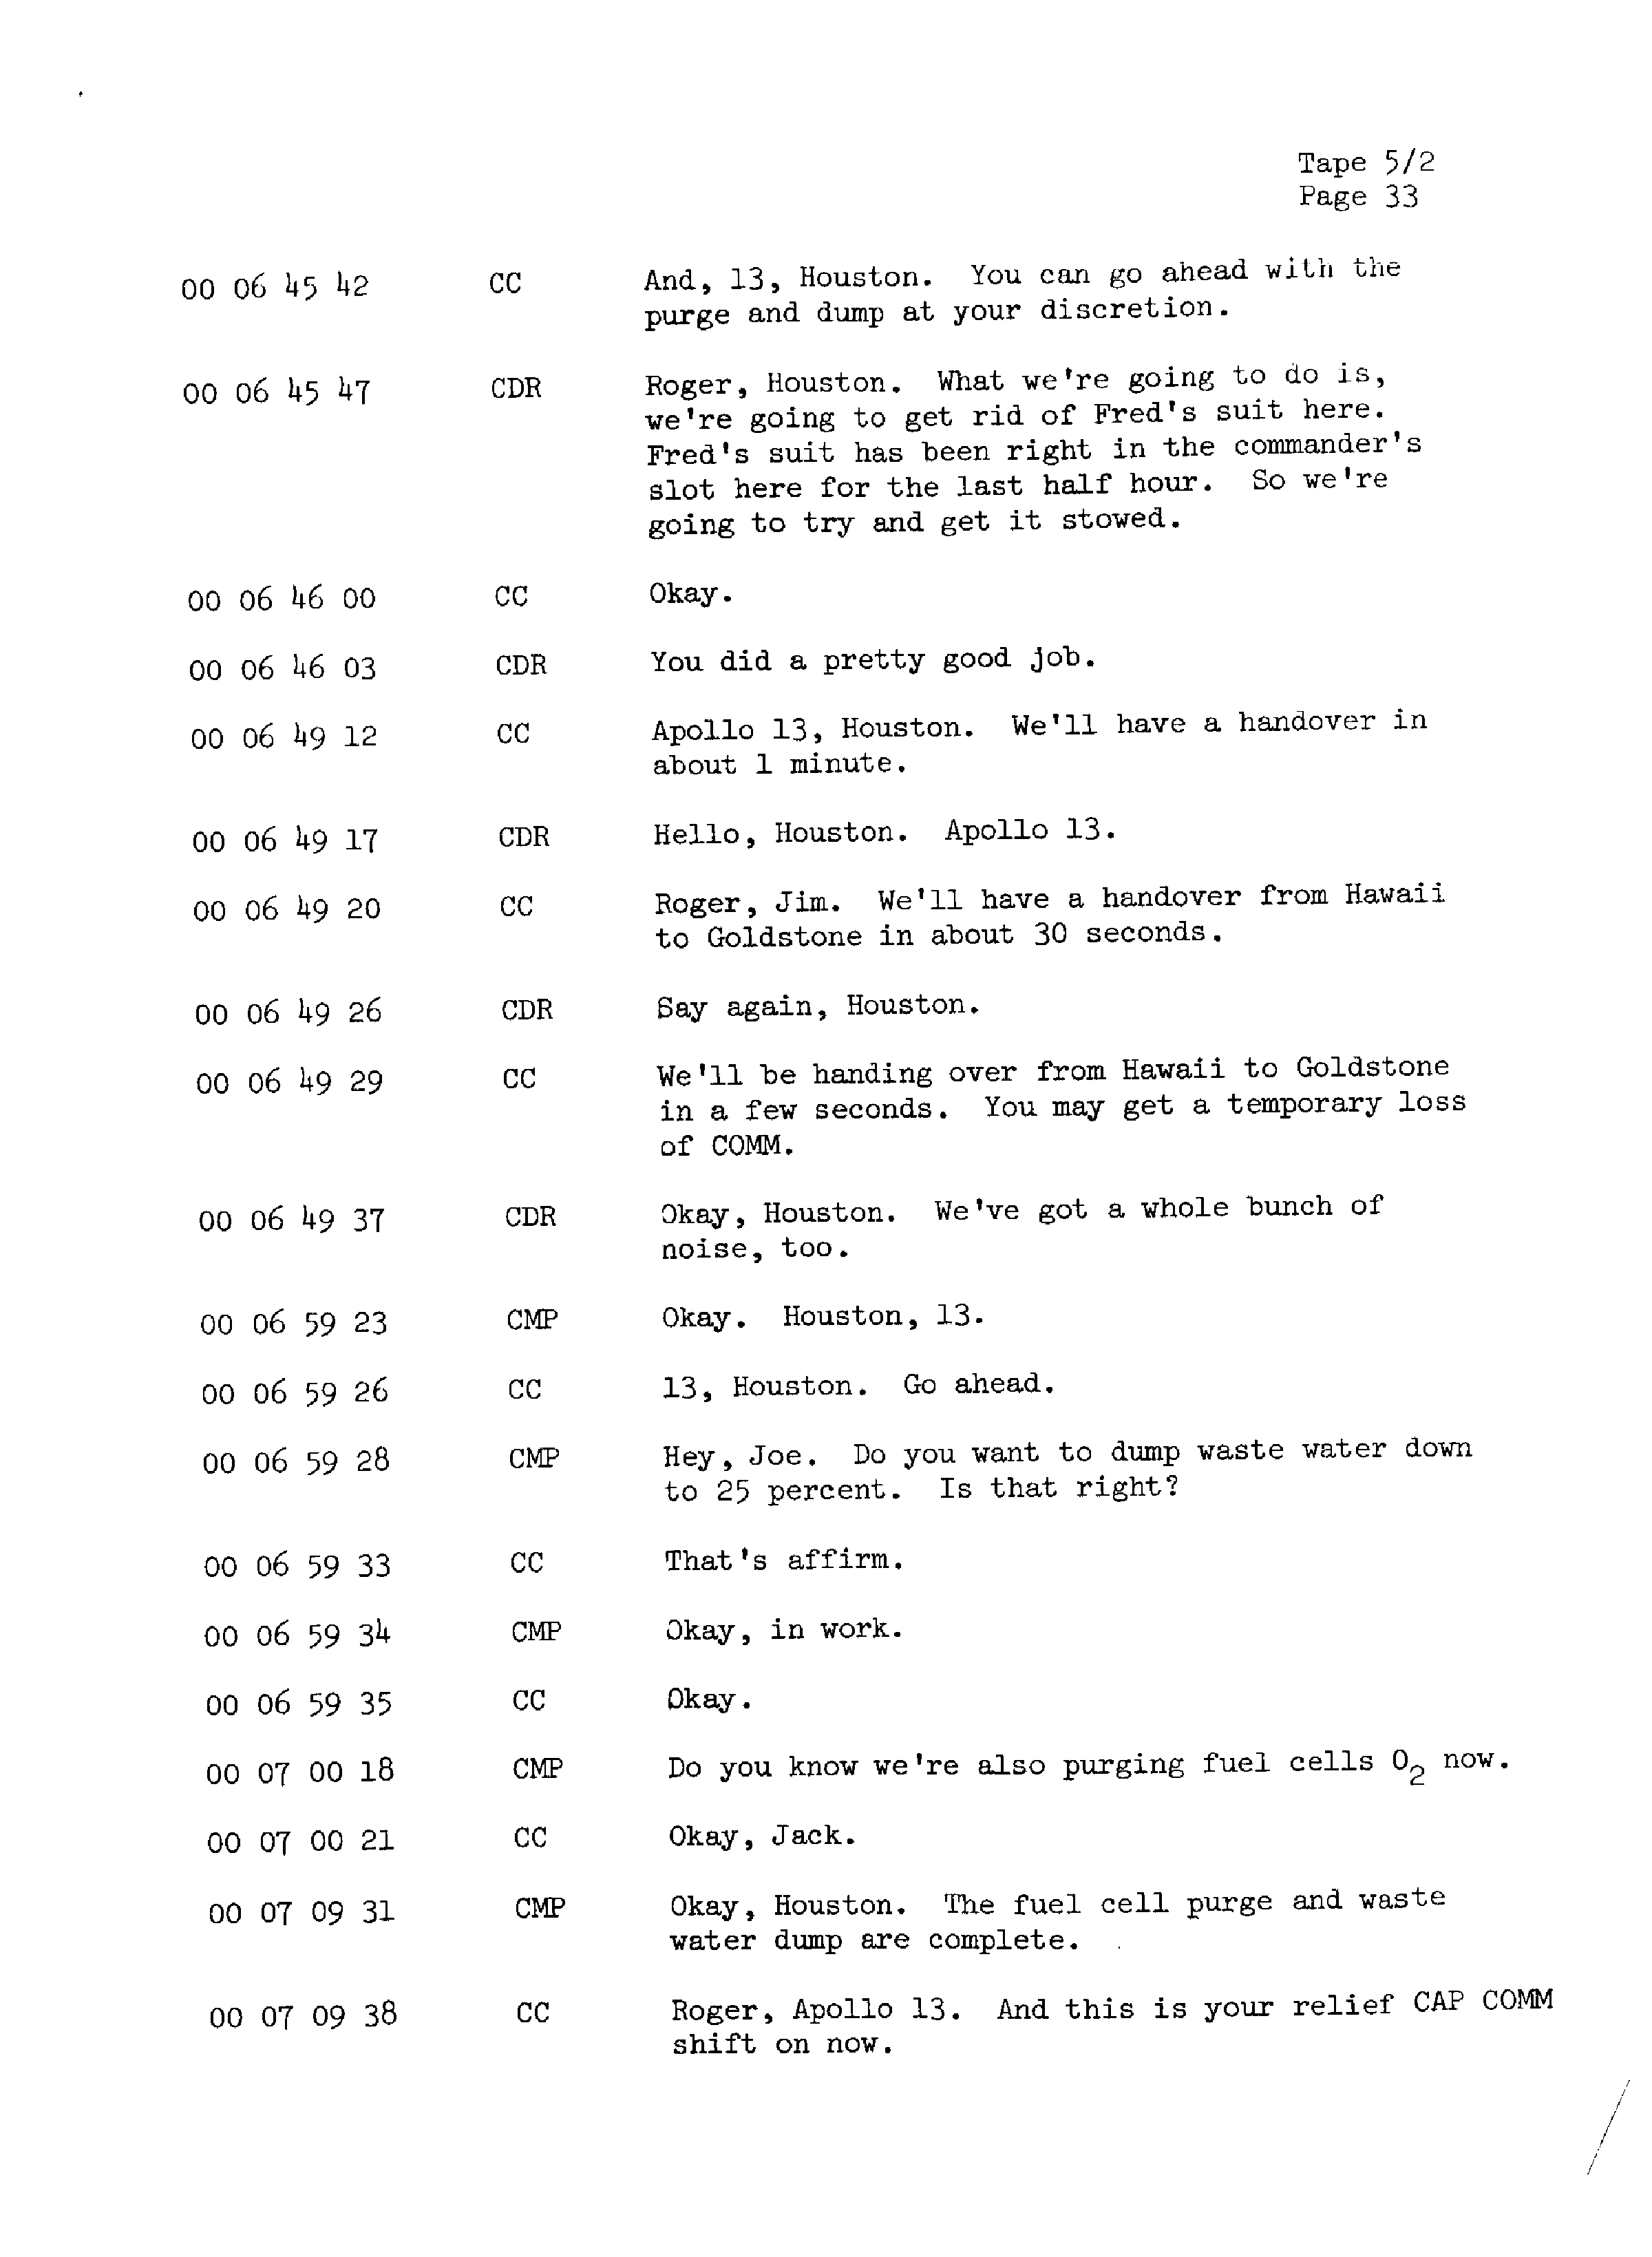 Page 40 of Apollo 13’s original transcript